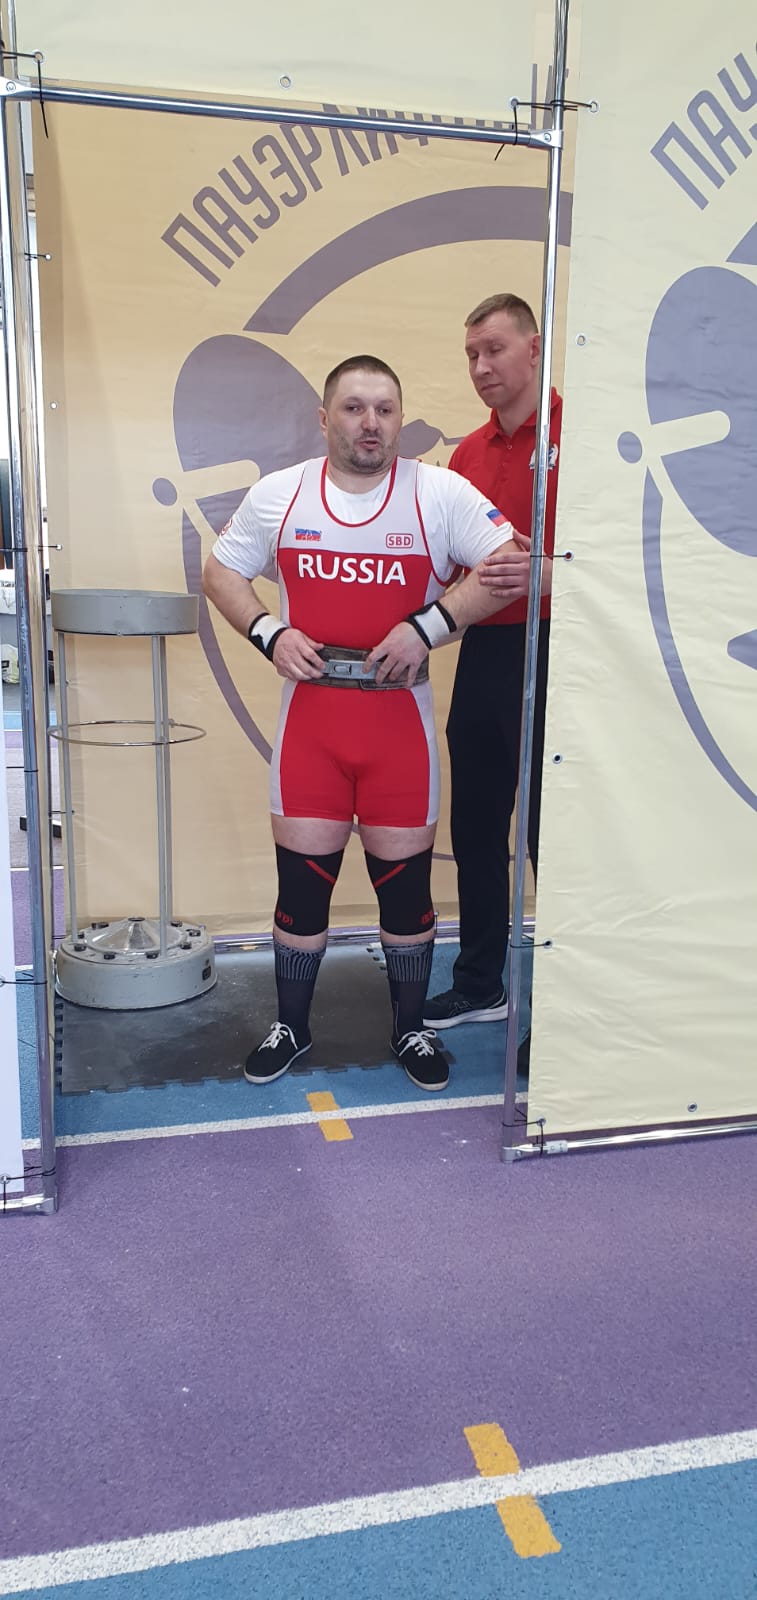  Подведены итоги чемпионата России по спорту слепых (дисциплина - пауэрлифтинг) в г. Челябинске 